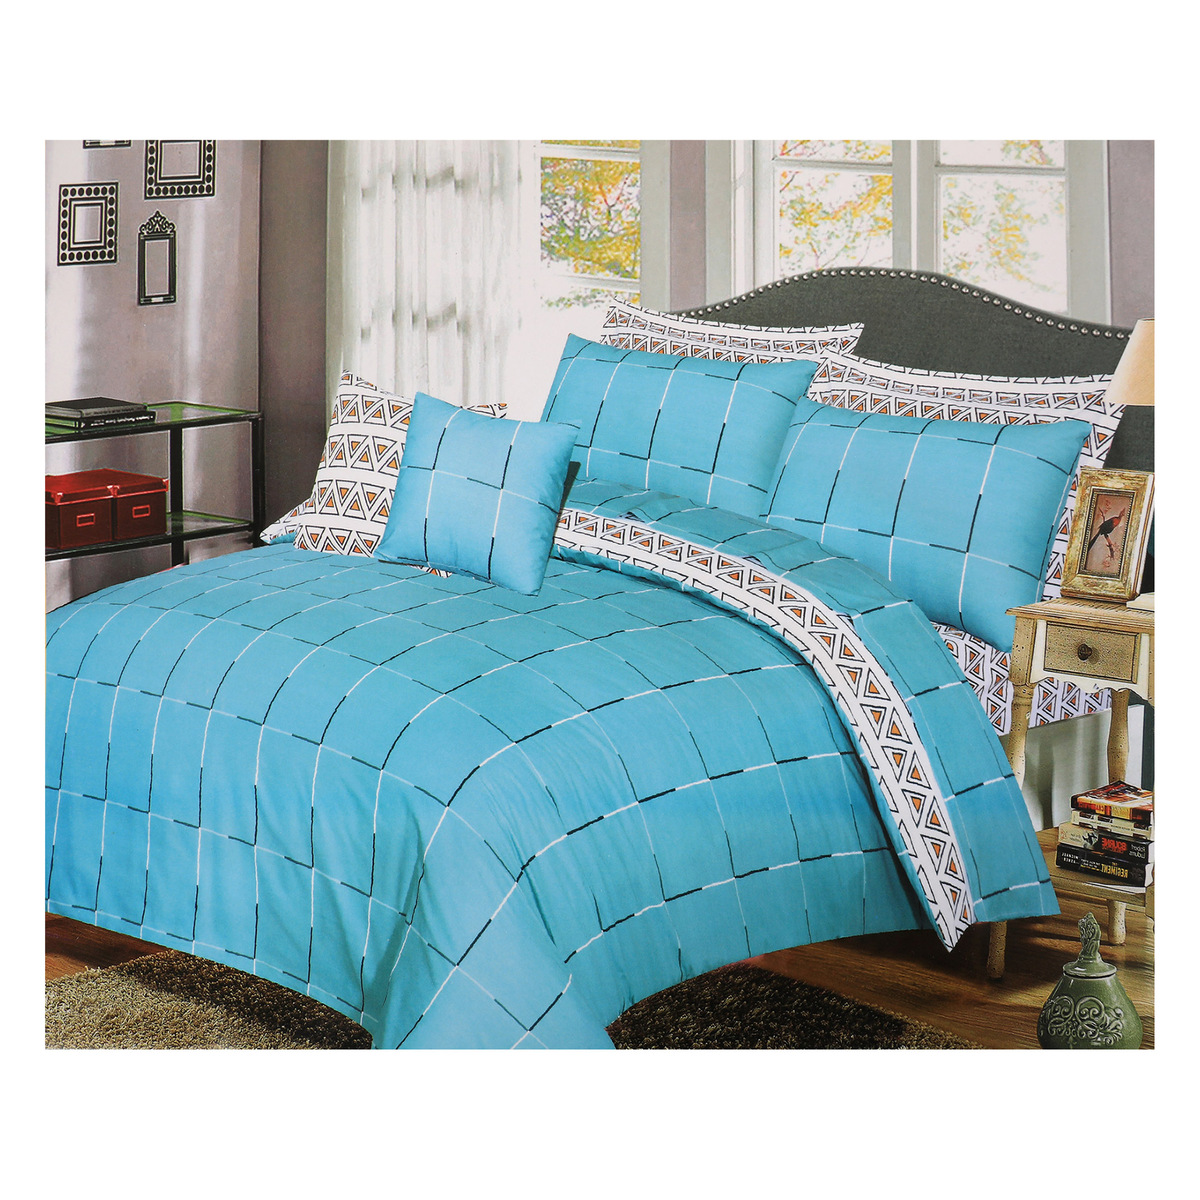 Homewell Comforter Queen 4pcs Set